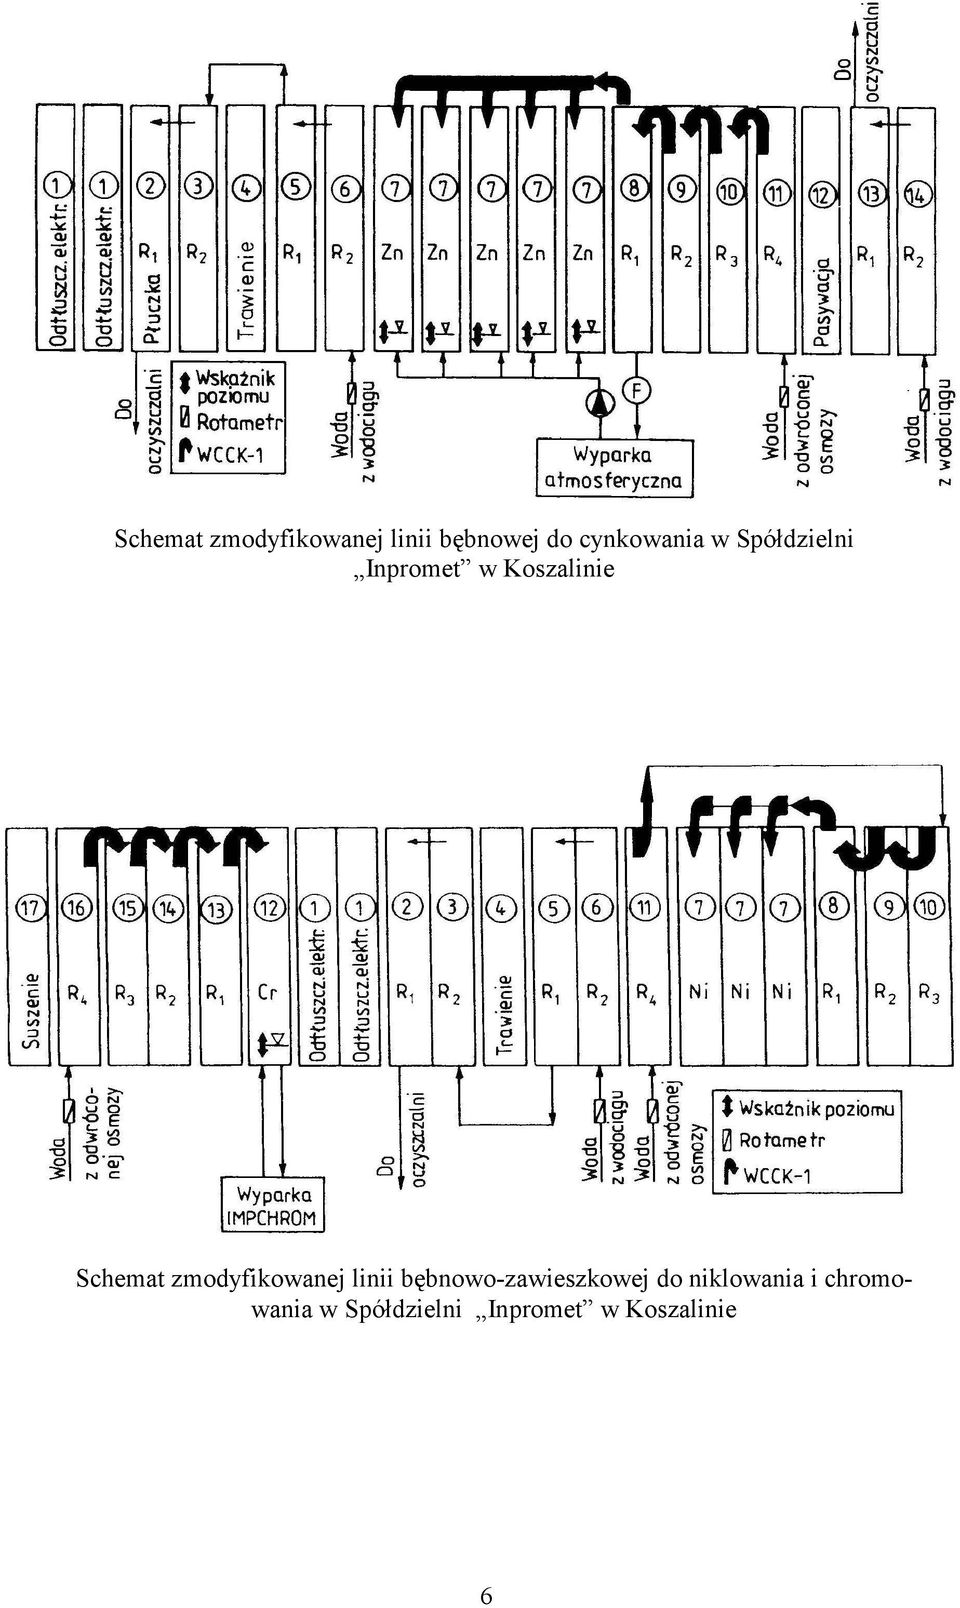 Schemat zmodyfikowanej linii bębnowozawieszkowej